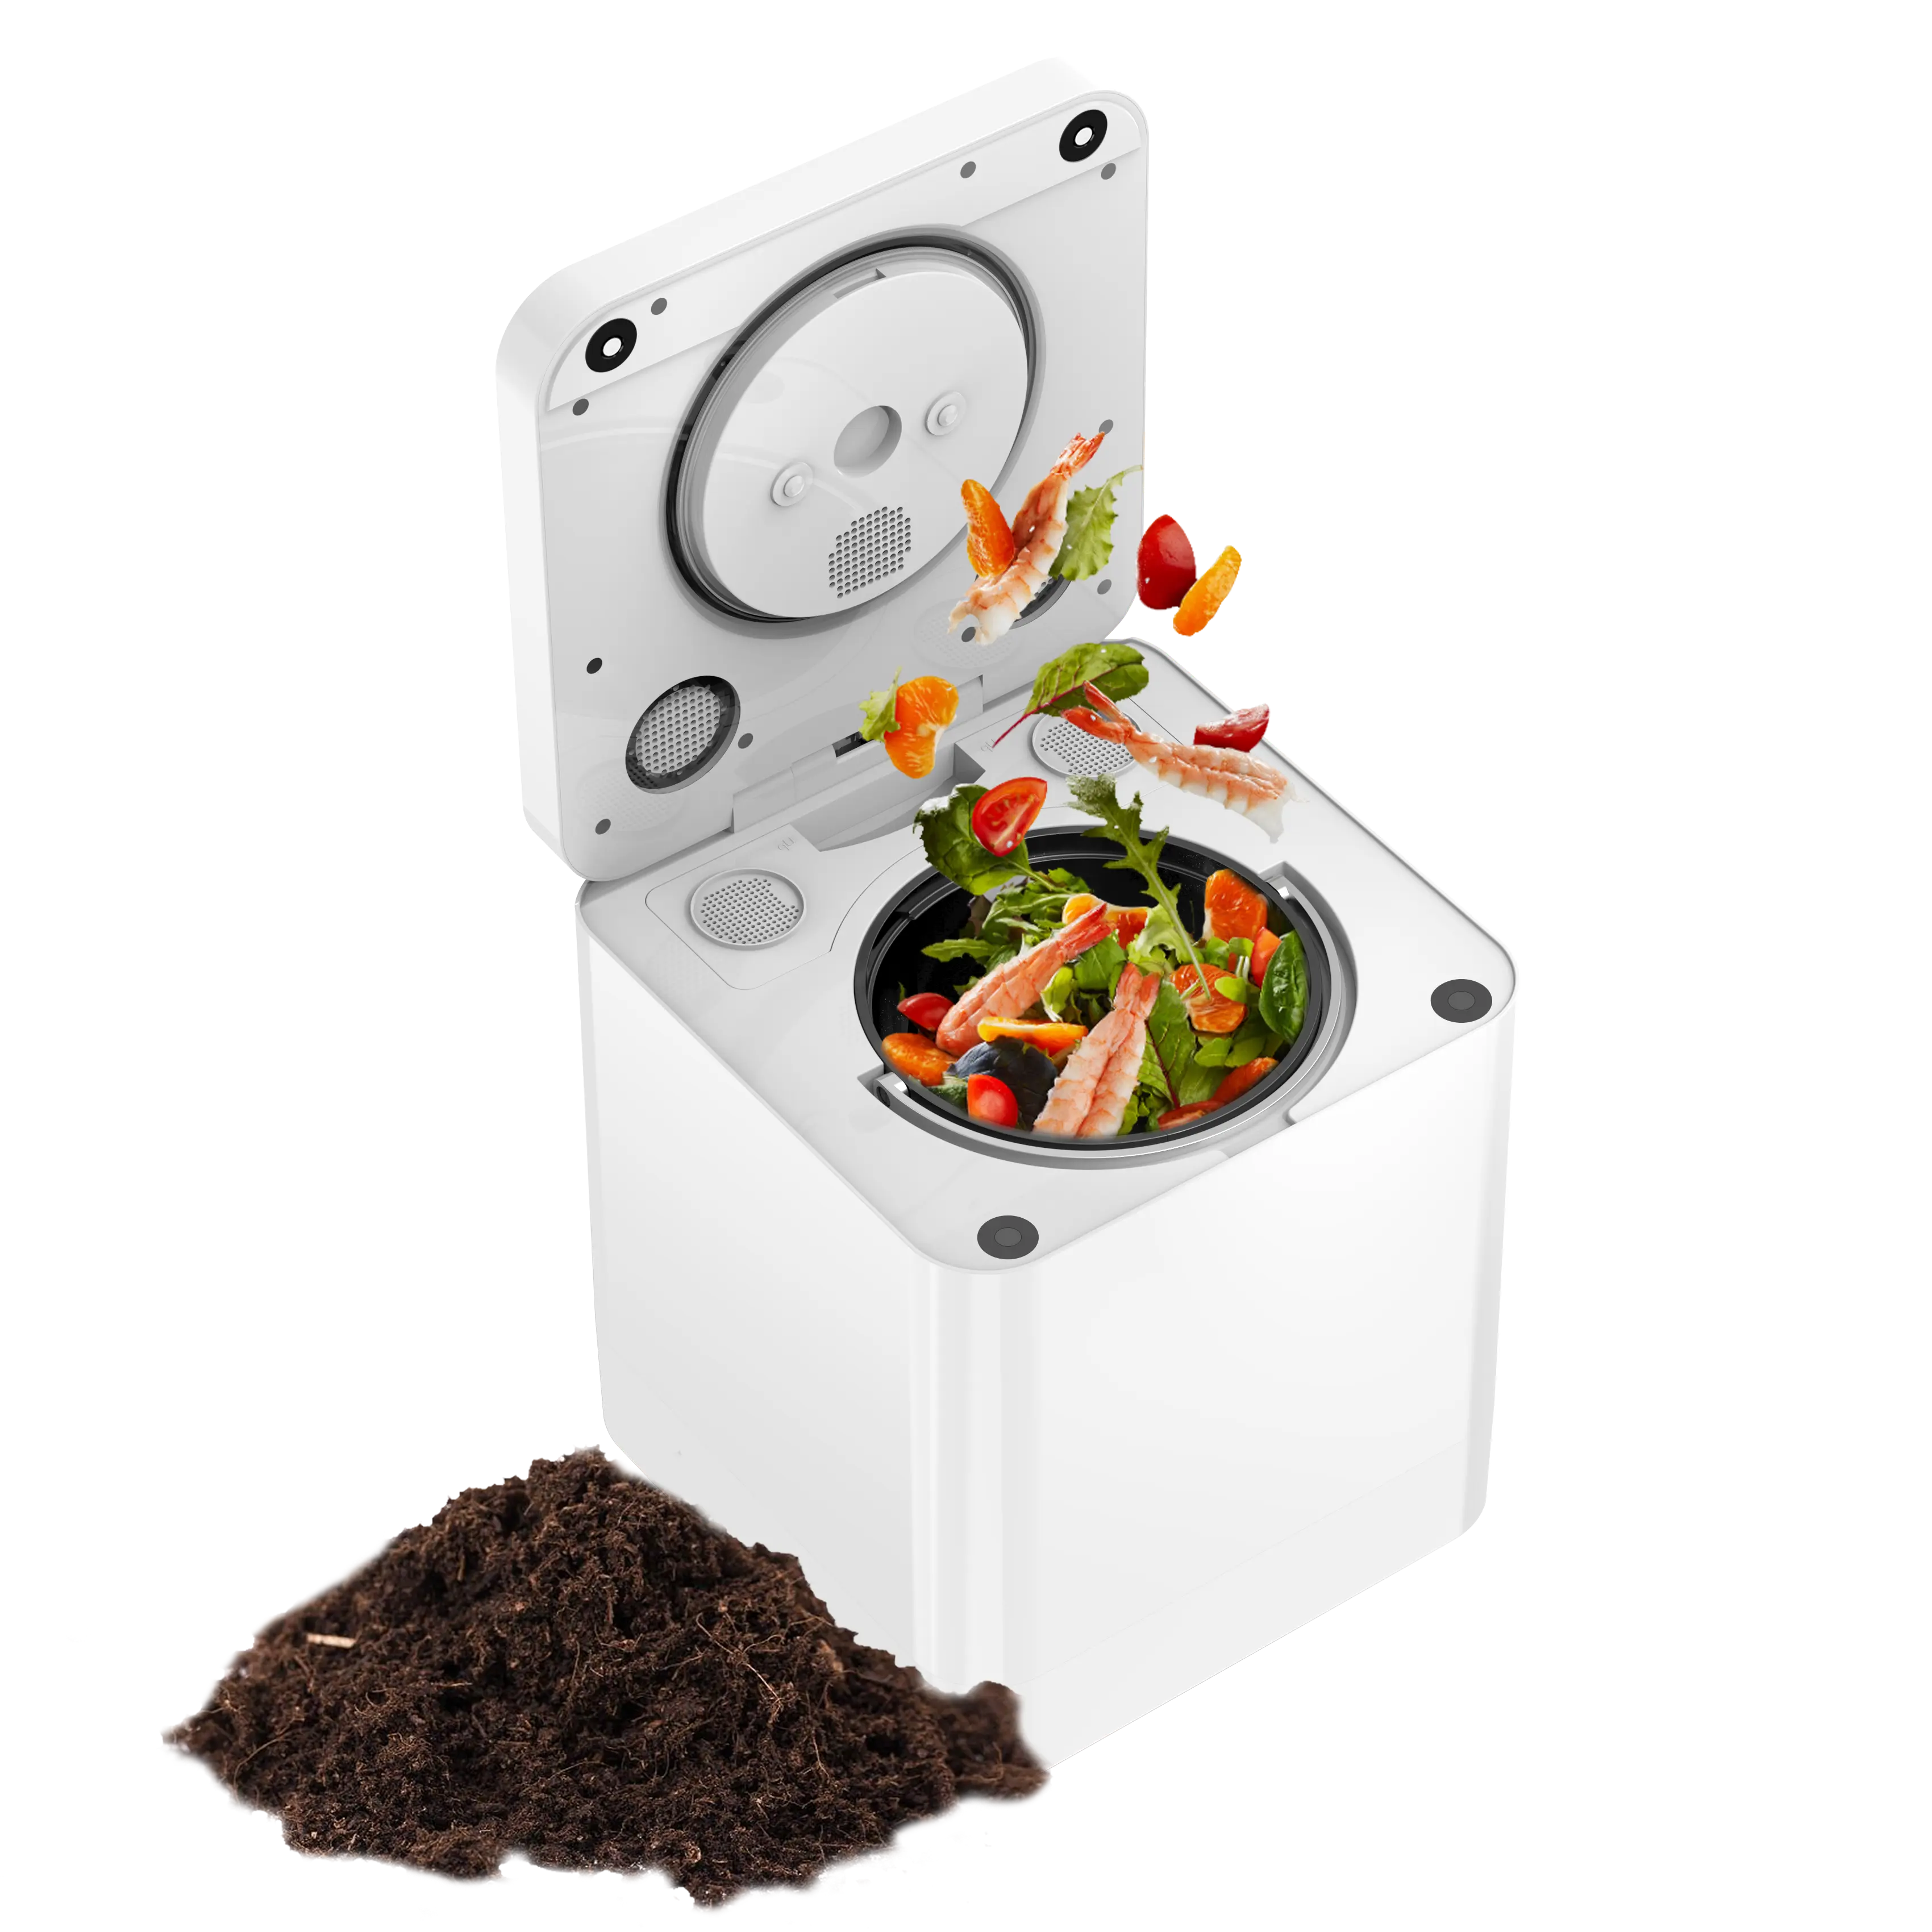 Compactador inteligente para cozinha inteligente, compostagem de alimentos e lixo, transforma resíduos em compostagem com um botão